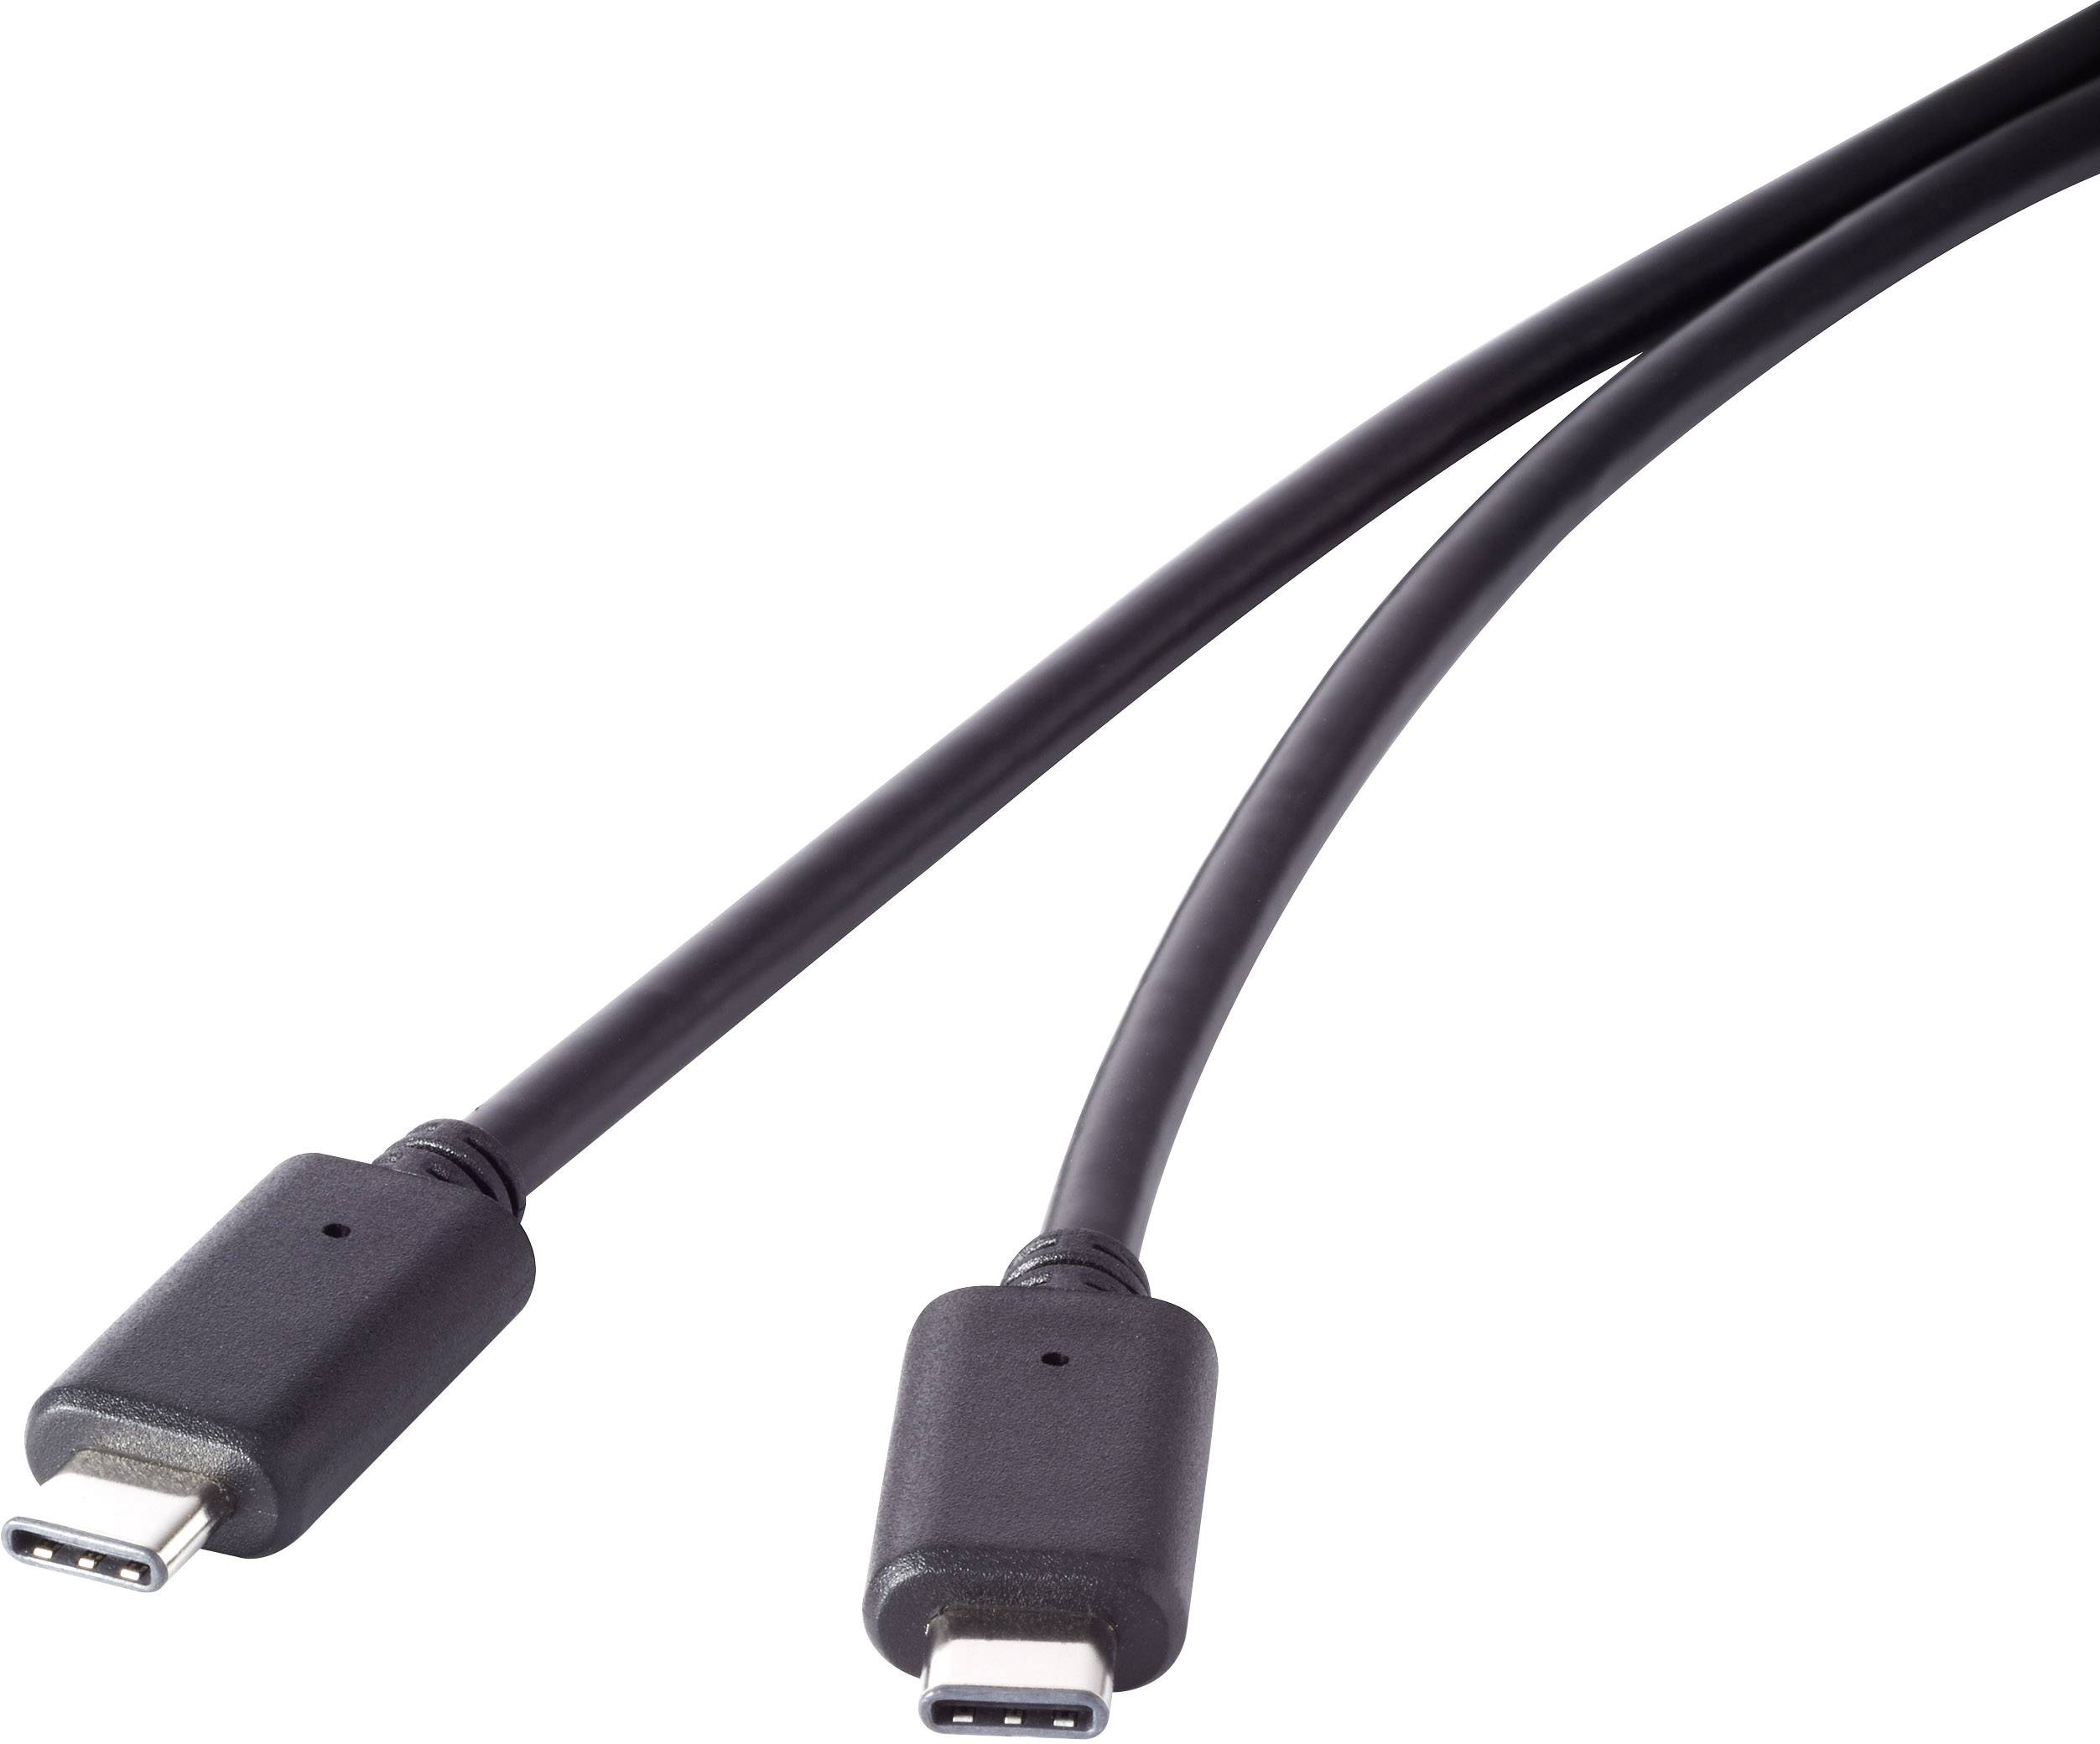 CONRAD USB 3.1 Gen 2 Kabel [1x USB-C? Stecker - 1x USB-C? Stecker] 0.5 m Schwarz vergoldete Steckkon